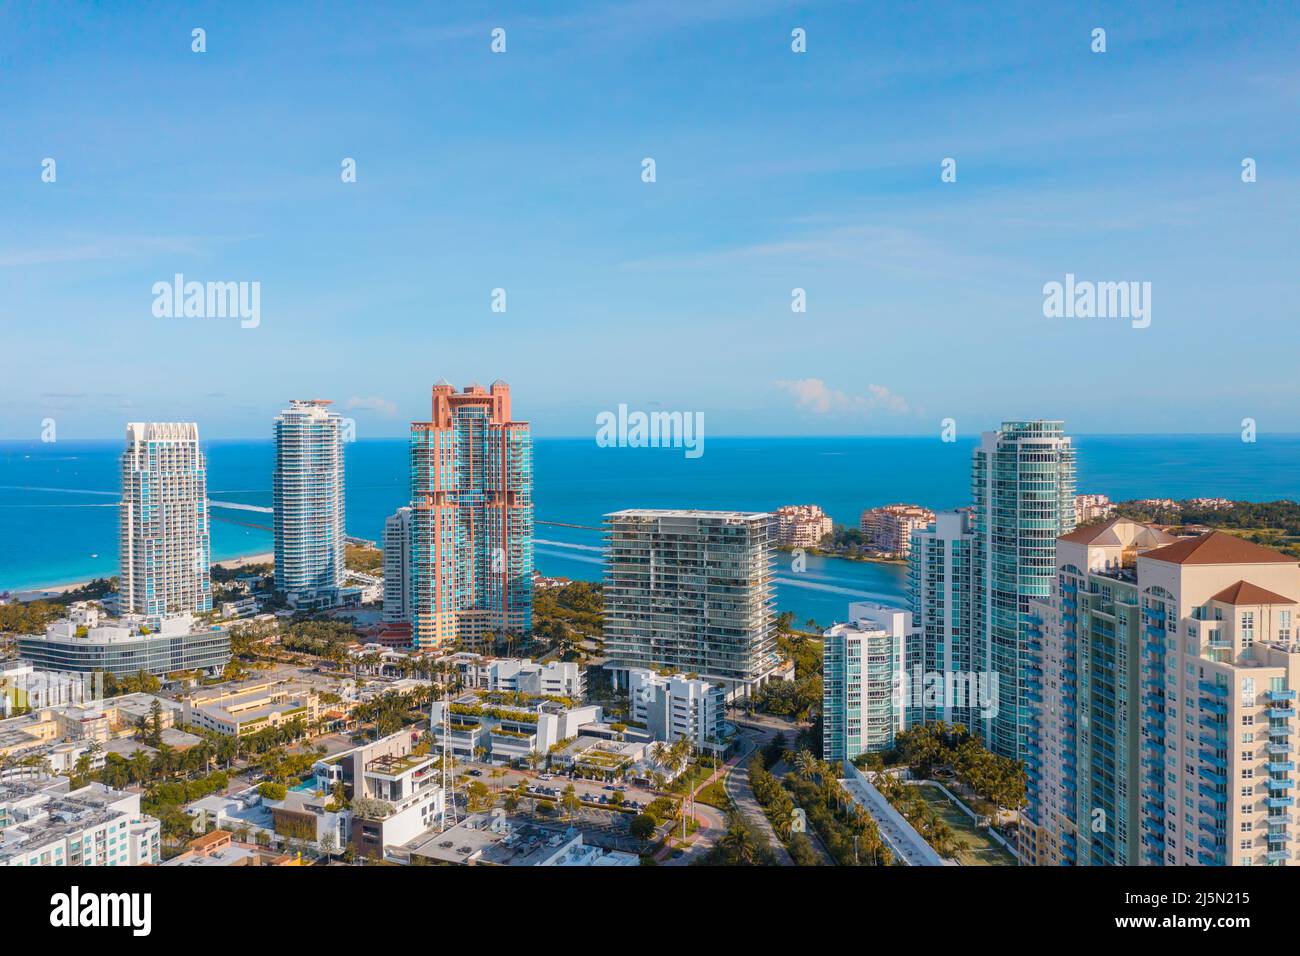 South Pointe in Miami Beach, Florida Stock Photo